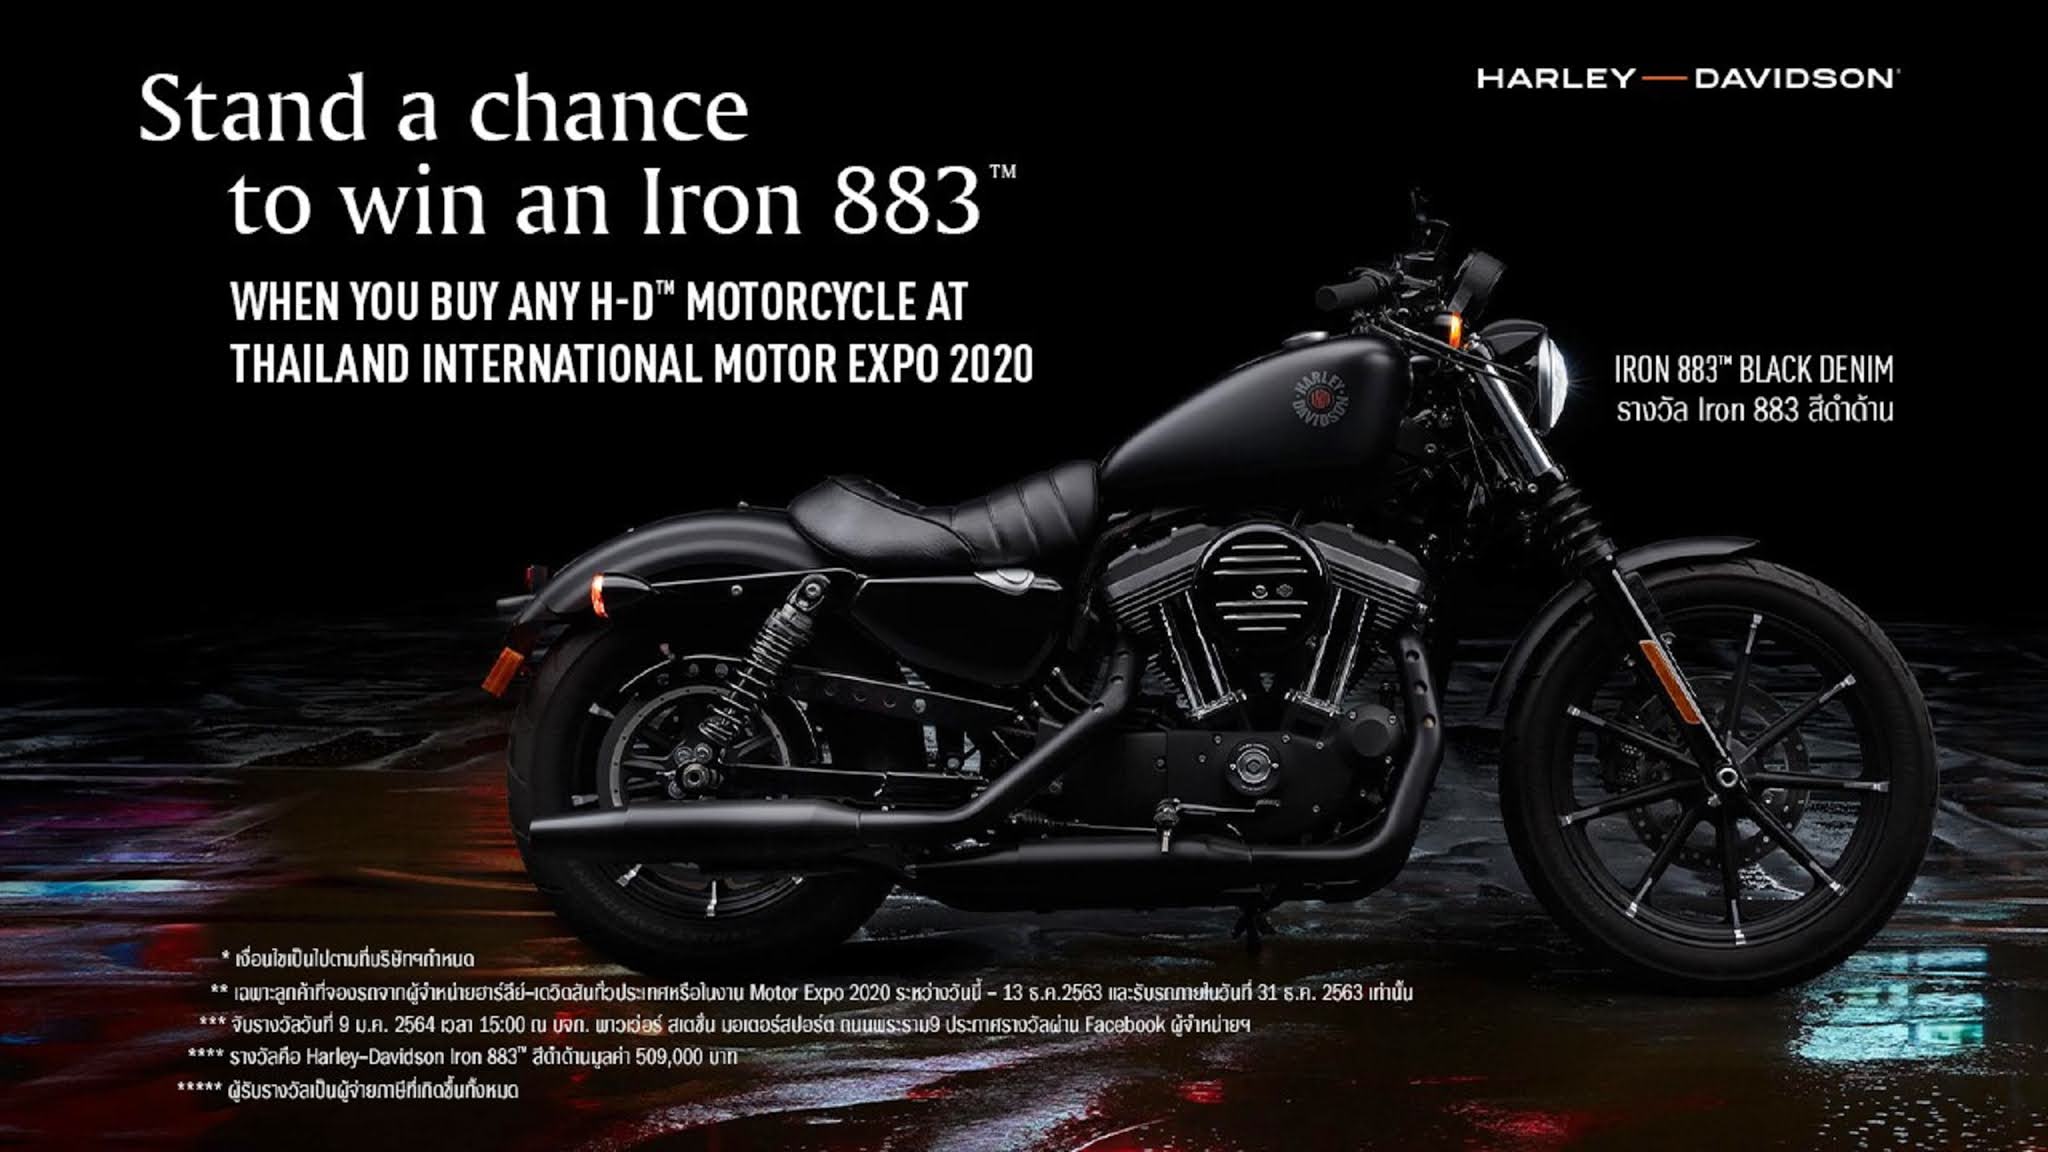 ฮาร์ลีย์-เดวิดสัน จัดใหญ่…!! ต้อนรับโค้งสุดท้ายกับ Thailand International Motor Expo 2020 ซื้อรถจักรยานยนต์ 1 คัน มีสิทธิ์ลุ้นรับ Harley-Davidson Sportster Iron 883™ อีก 1 คัน ฟรี !! 